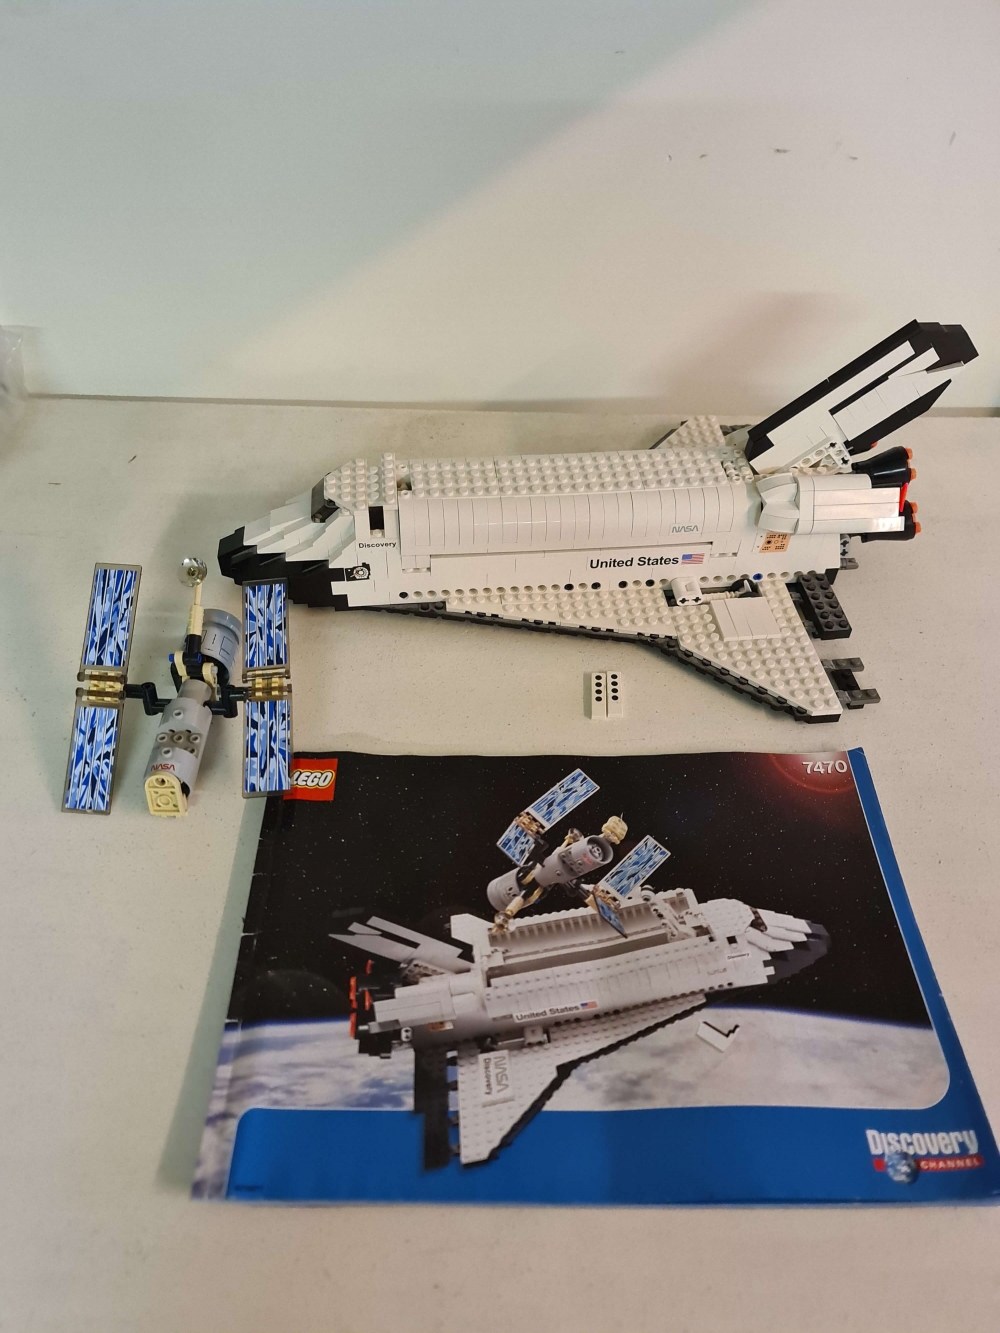 Sett 7470 fra Lego Discovery serien.
Meget sjeldent sett.
Ikke helt komplett men mangler noen deler og klistremerker.
Se bilder. Med manual.